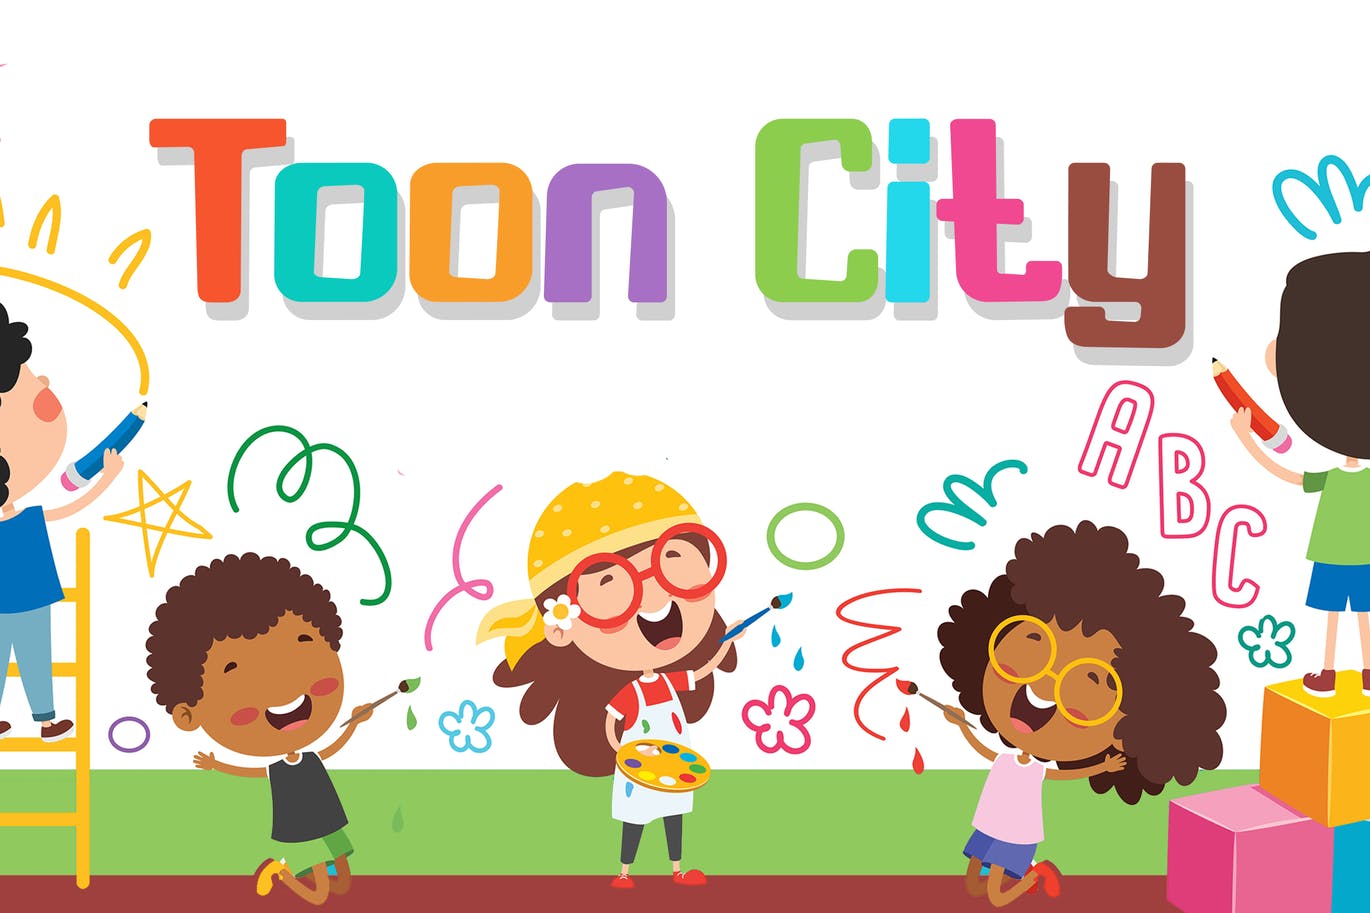 儿童卡通书籍无衬线字体素材 Toon City – Kids Font 设计素材 第1张